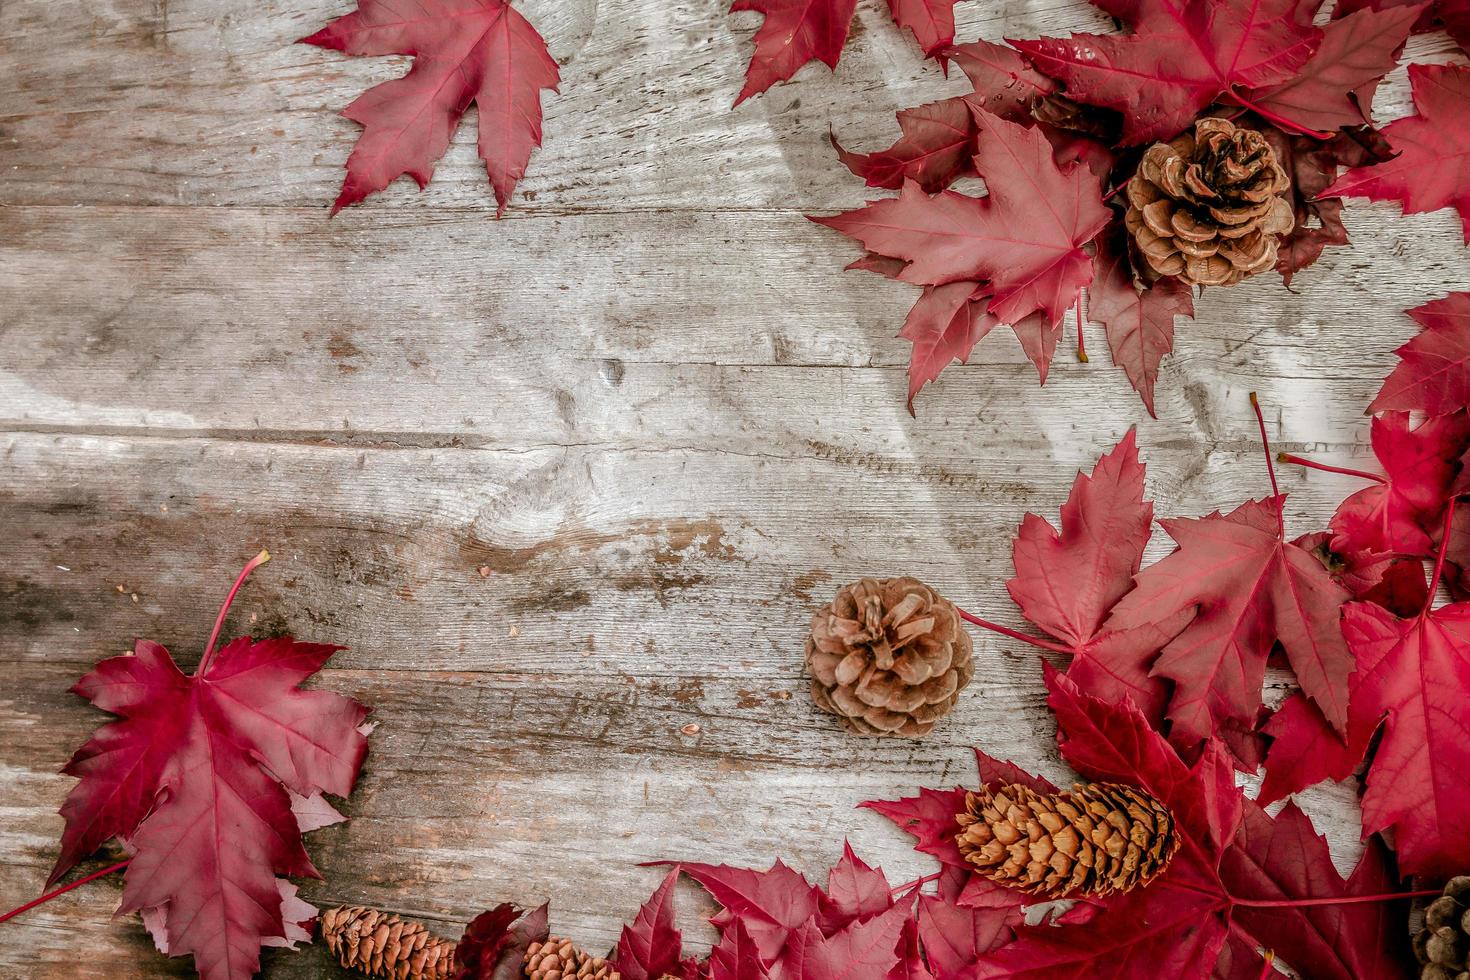 feestelijk herfstdecor van pompoenen, dennen en bladeren op een houten ondergrond. concept van thanksgiving day of halloween. plat lag herfstcompositie met kopieerruimte. foto